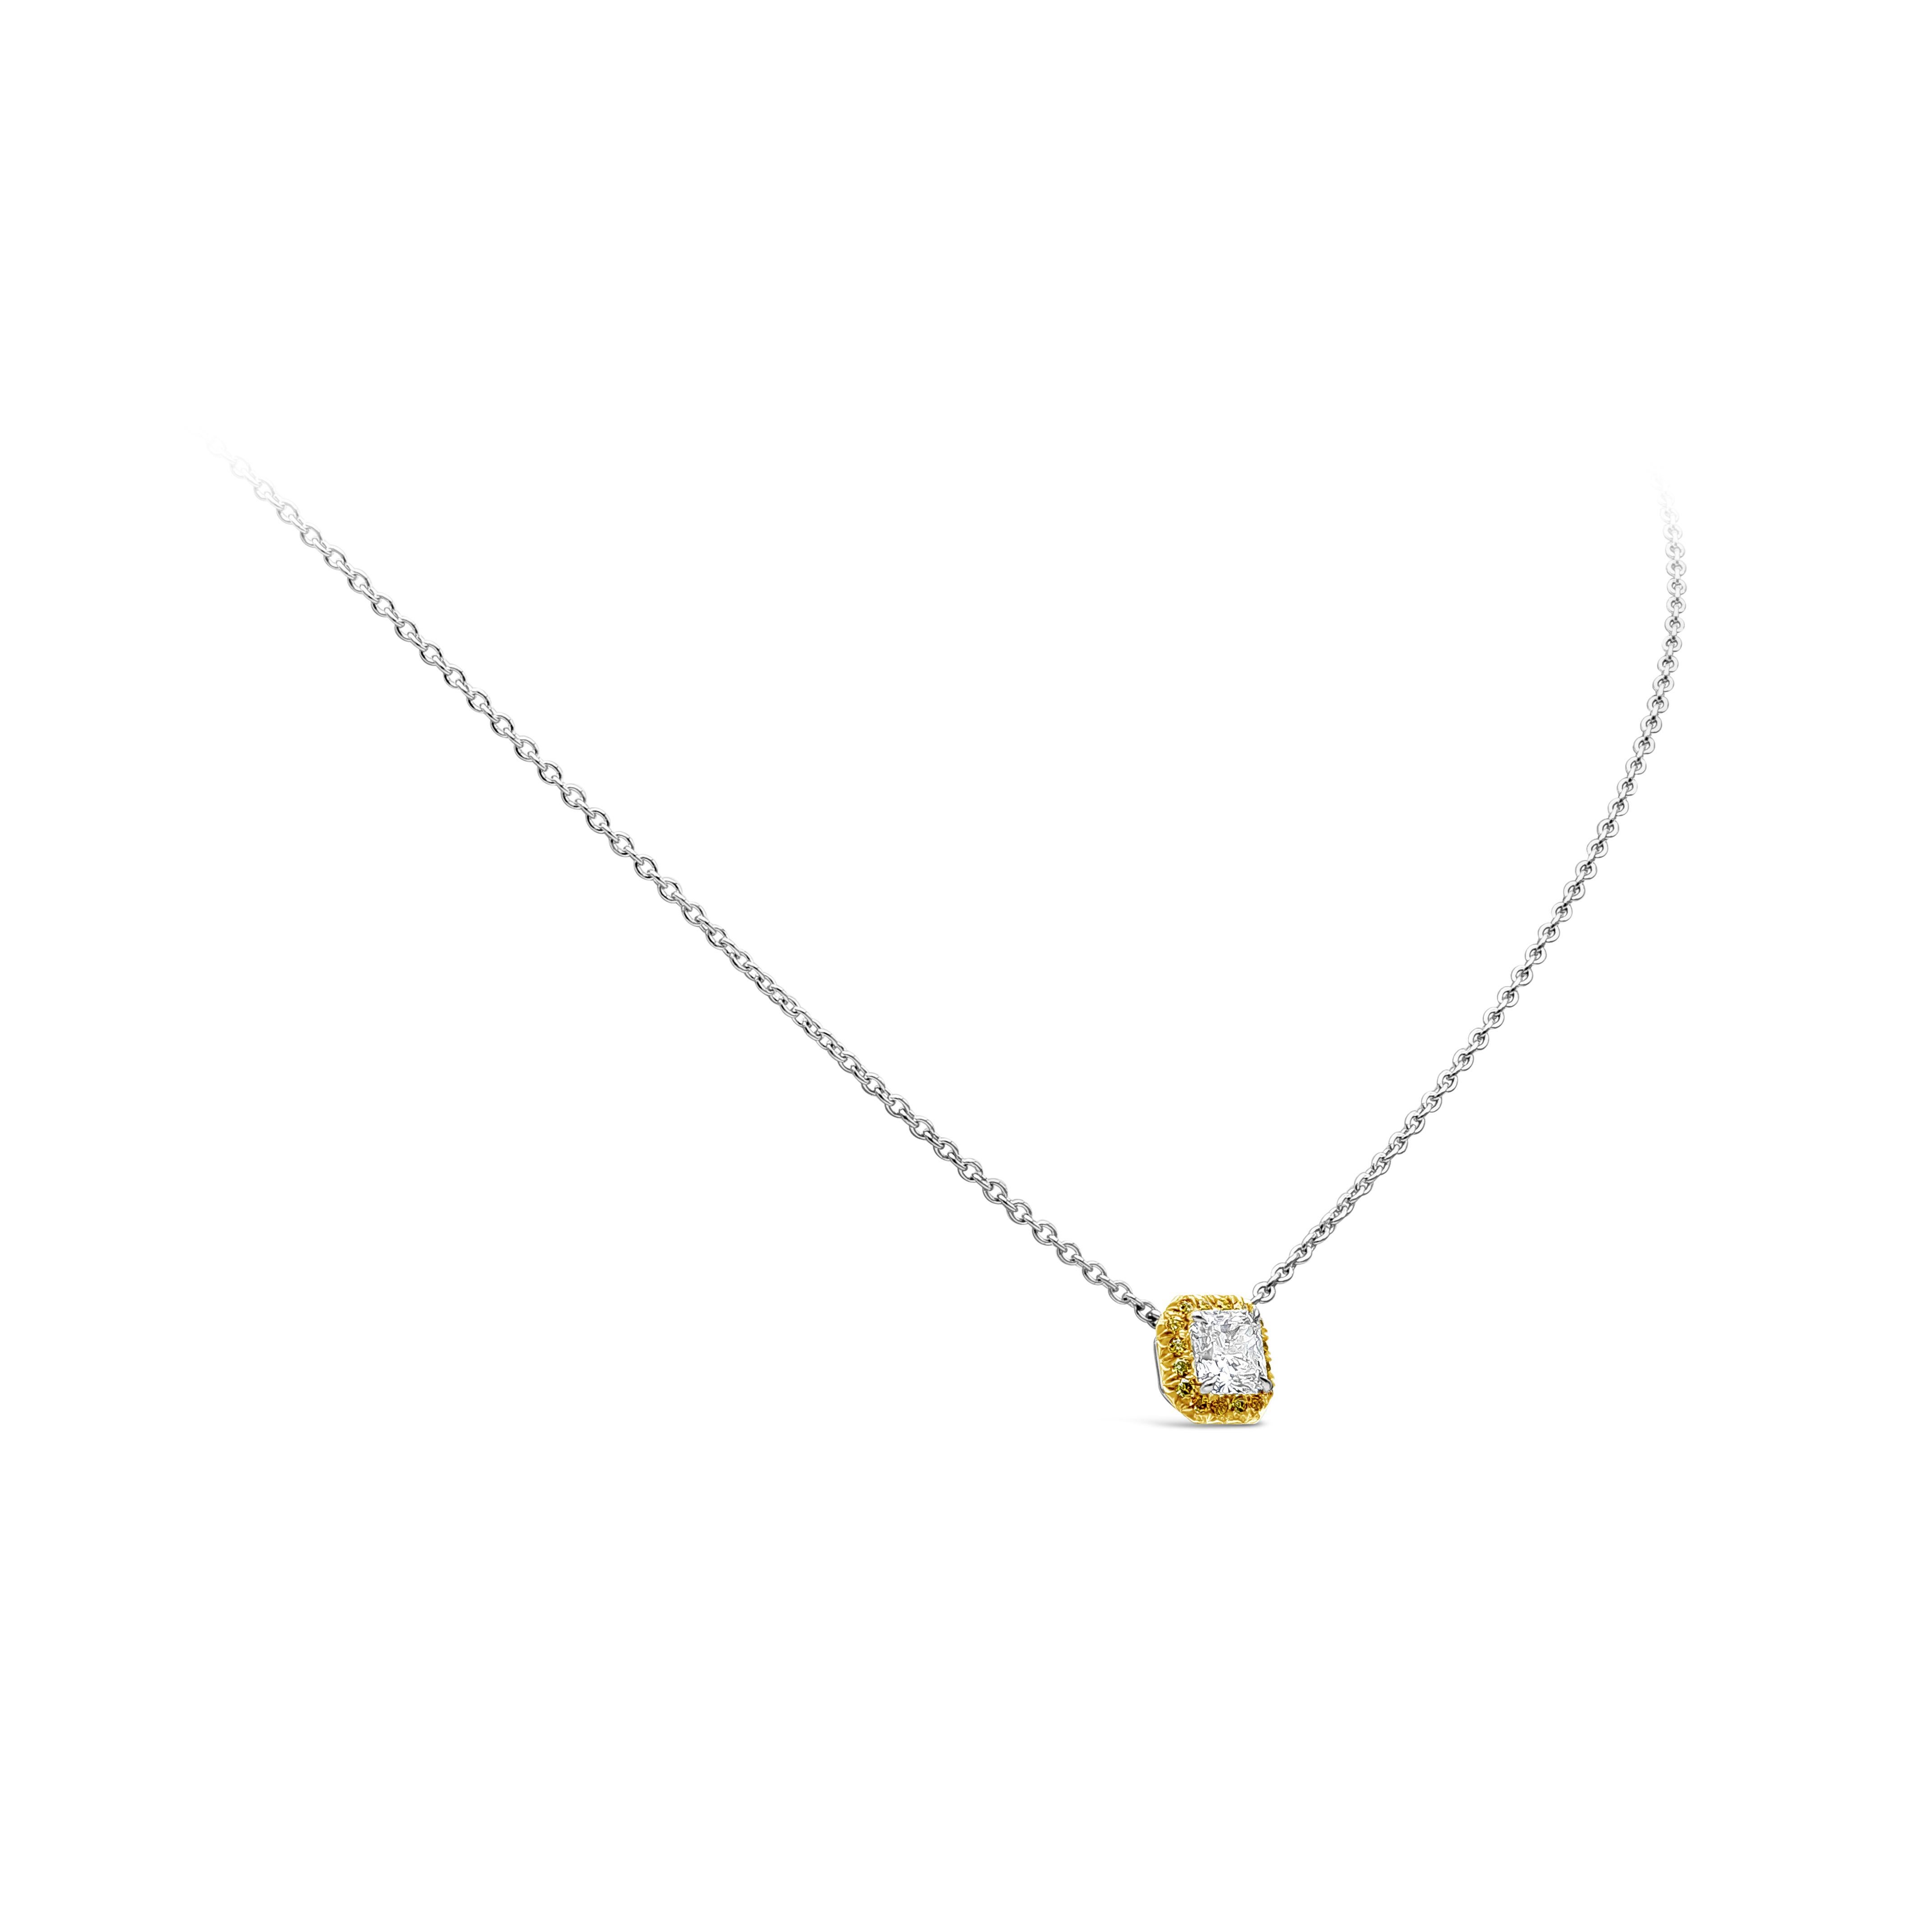 Eine schlichte Halskette mit einem Diamanten im Strahlenschliff von 0,85 Karat, GIA-zertifiziert M-VVS2, eingefasst in einen Halo aus gelben Diamanten im Brillantschliff von 0,17 Karat. Hergestellt in Platin.

Dieses Modell hat einen passenden